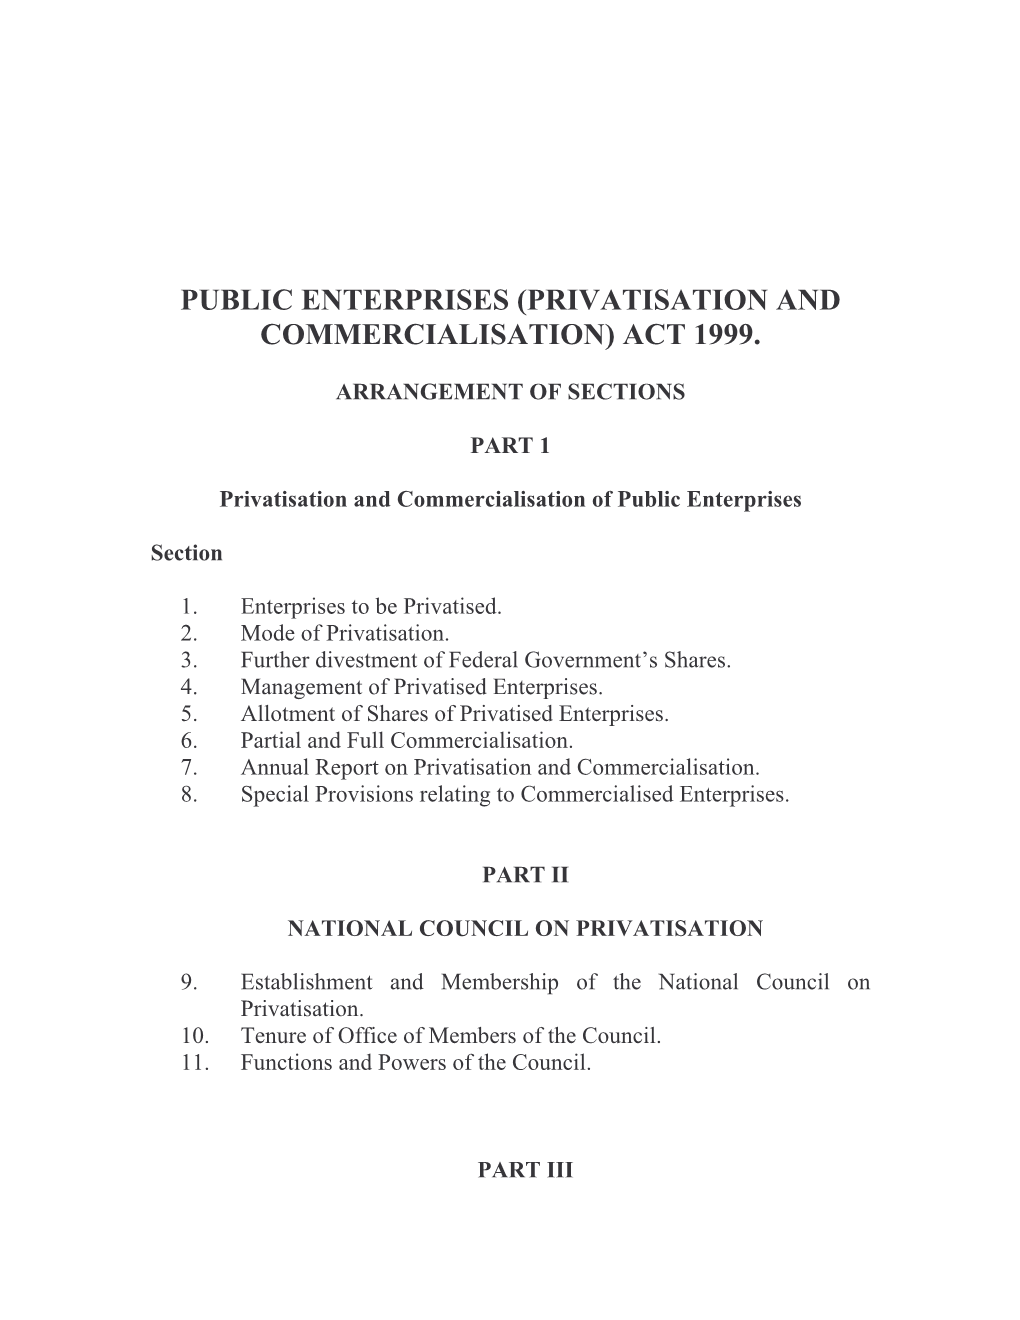 Public Enterprises (Privatisation and Commercialisation) Act 1999